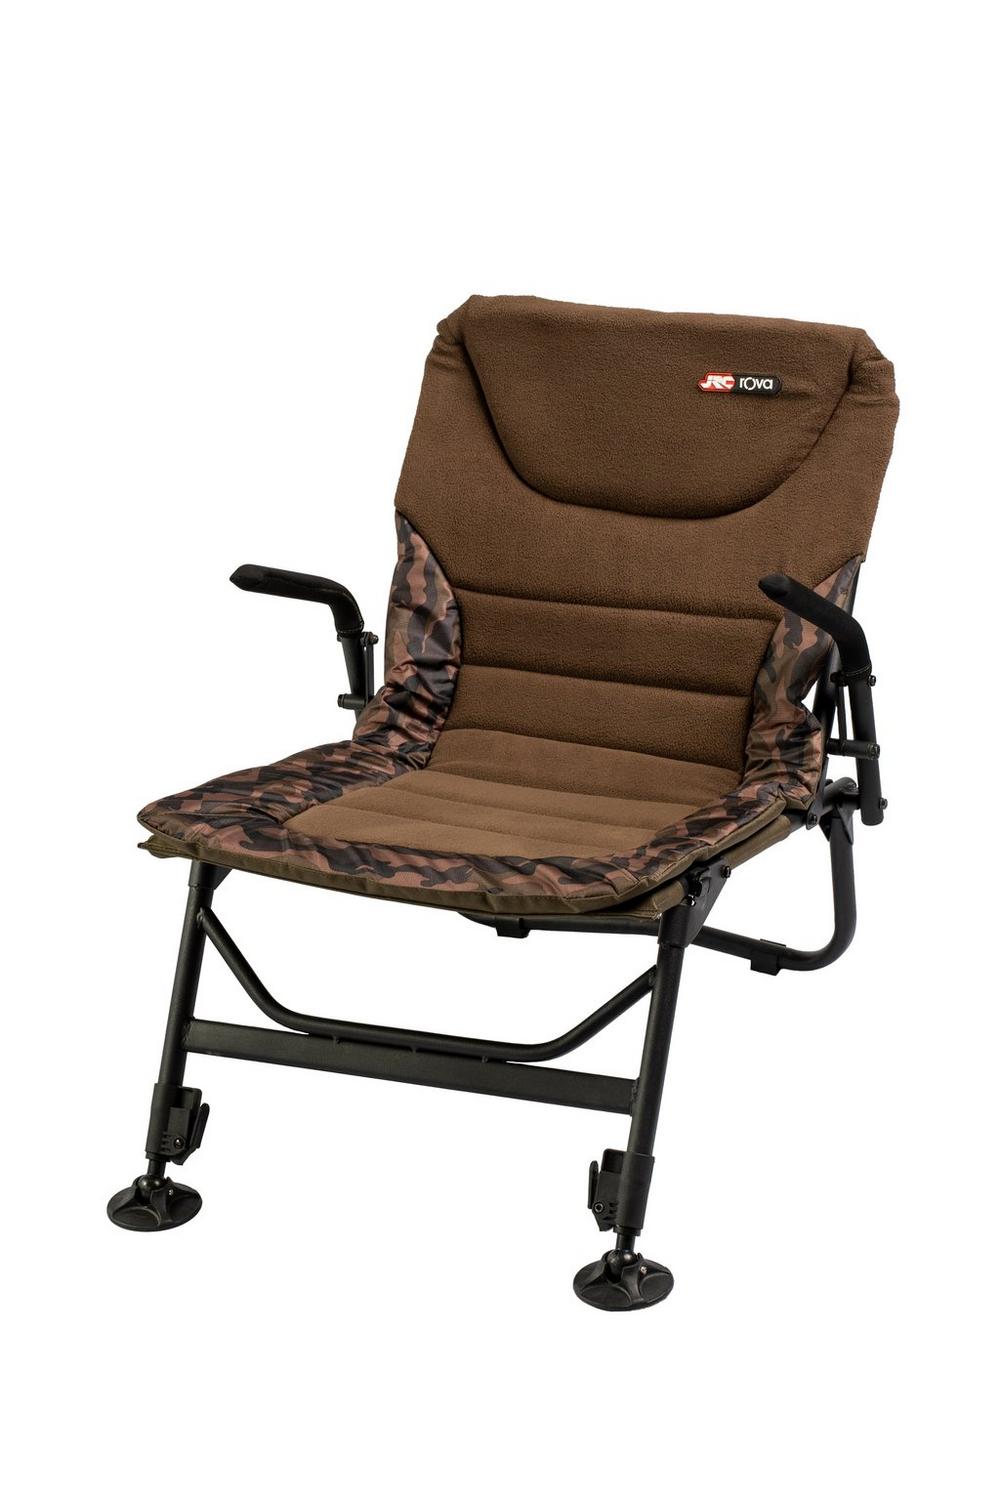 JRC Rova X-Lo Chair